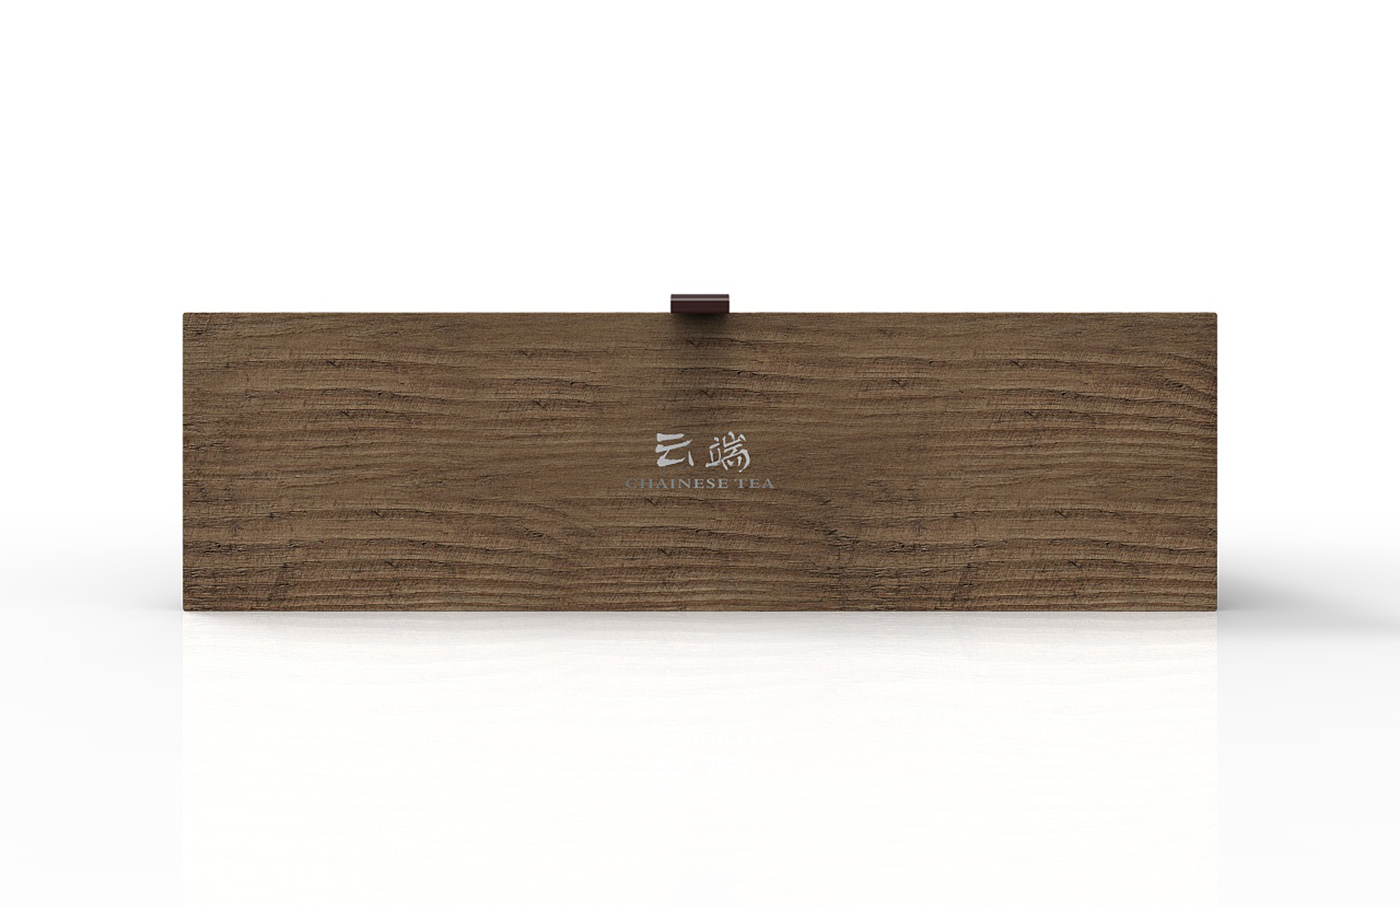 云端高级茶叶盒包装设计-木质茶叶盒包装设计